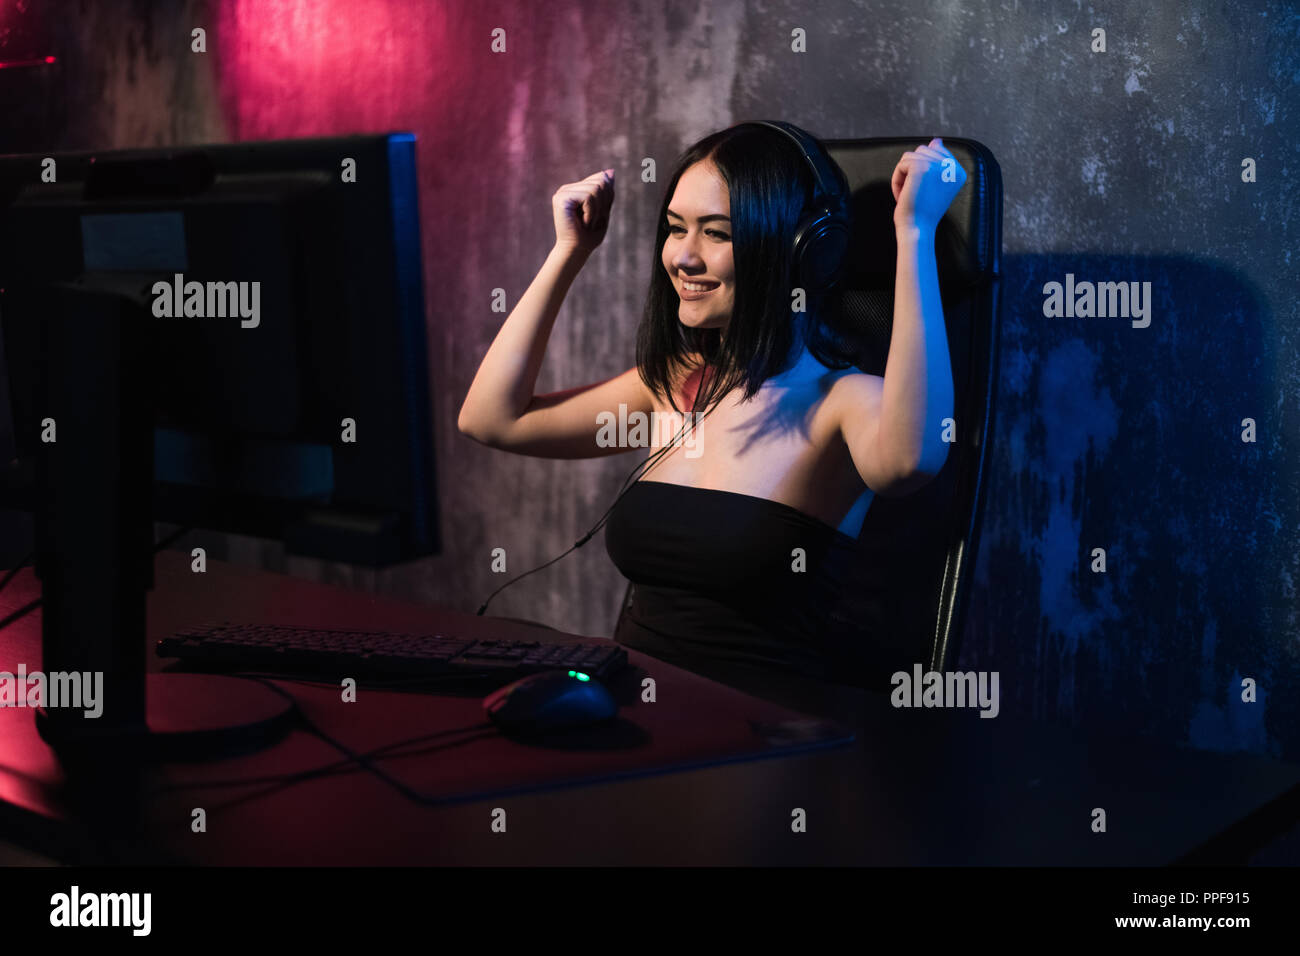 Portrait einer jungen glückliches Mädchen, nachdem er ein Video Spiel freut, - Feiern gewinnen in Gaming emotion Konzept. Stockfoto